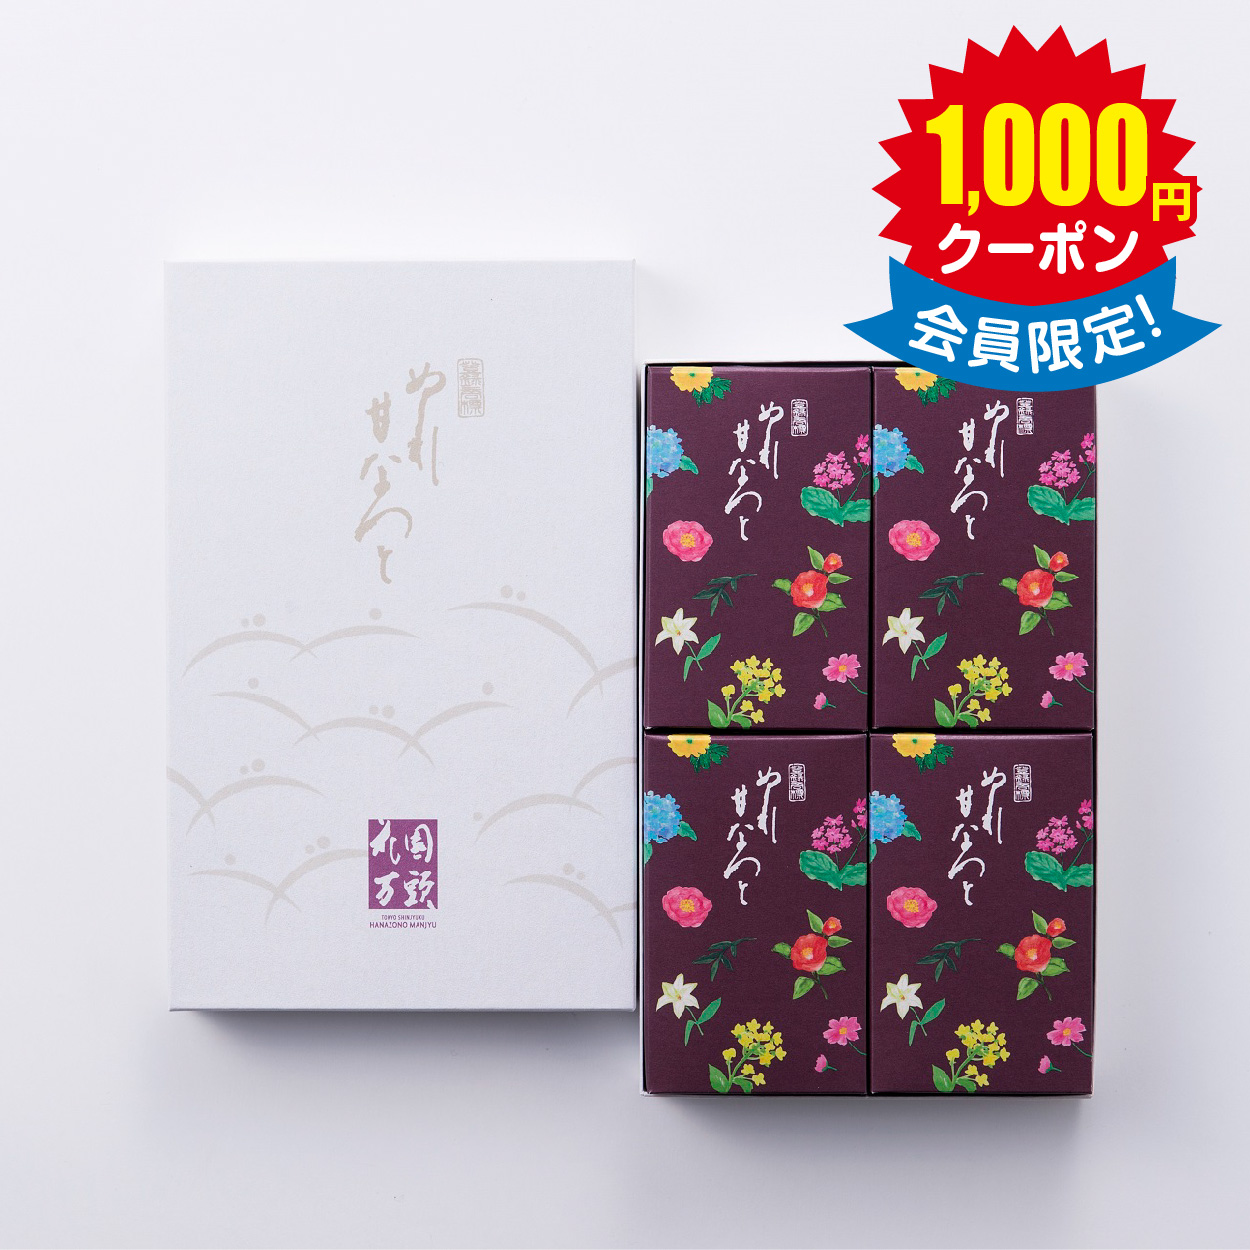 東京・新宿 「花園万頭」 ぬれ甘なつと小箱(4個入) × 12箱